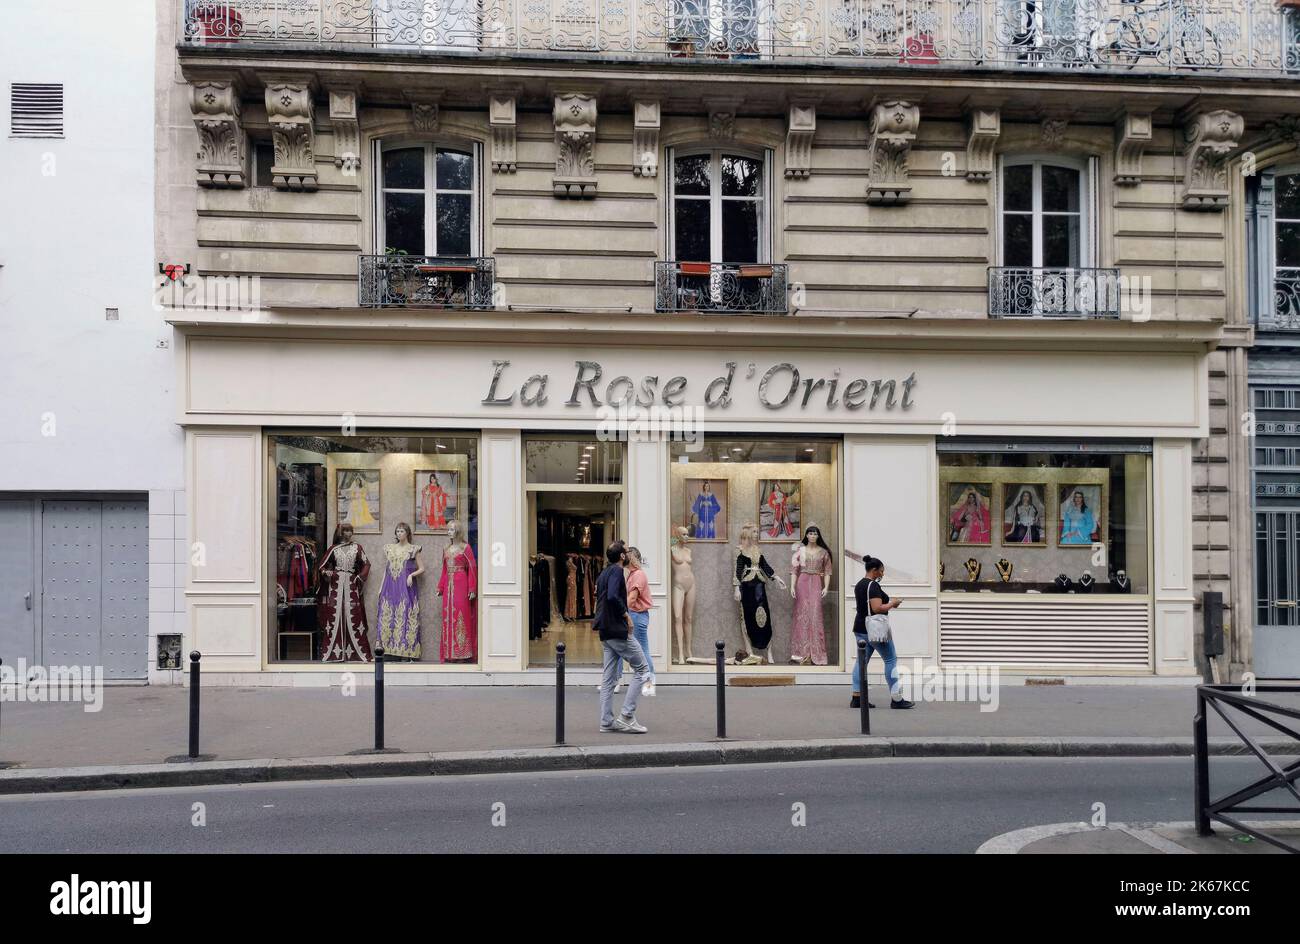 France Paris, quartier de Montmartre dans le the18th arrondissement, est principalement connu pour son histoire artistique et comme quartier des boîtes de nuit. Photo © Fabio Banque D'Images